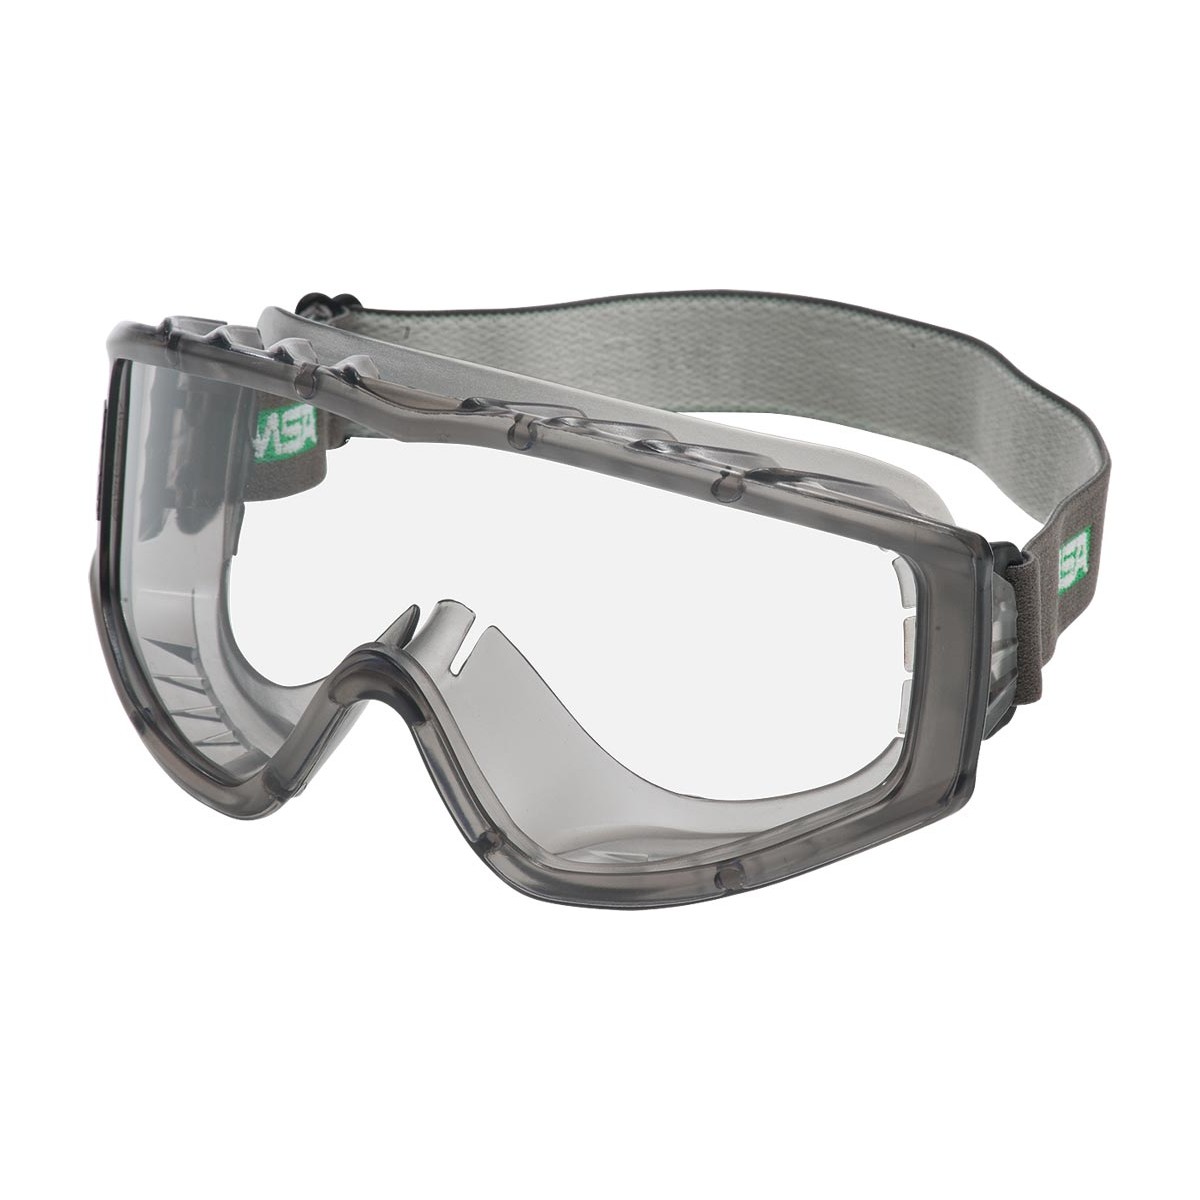 Защитные очки и наушники. MSA очки защитные. Очки защитные сетчатые MSA. Защитные очки Milwaukee Premium. Защитные очки Cofra gl-01.